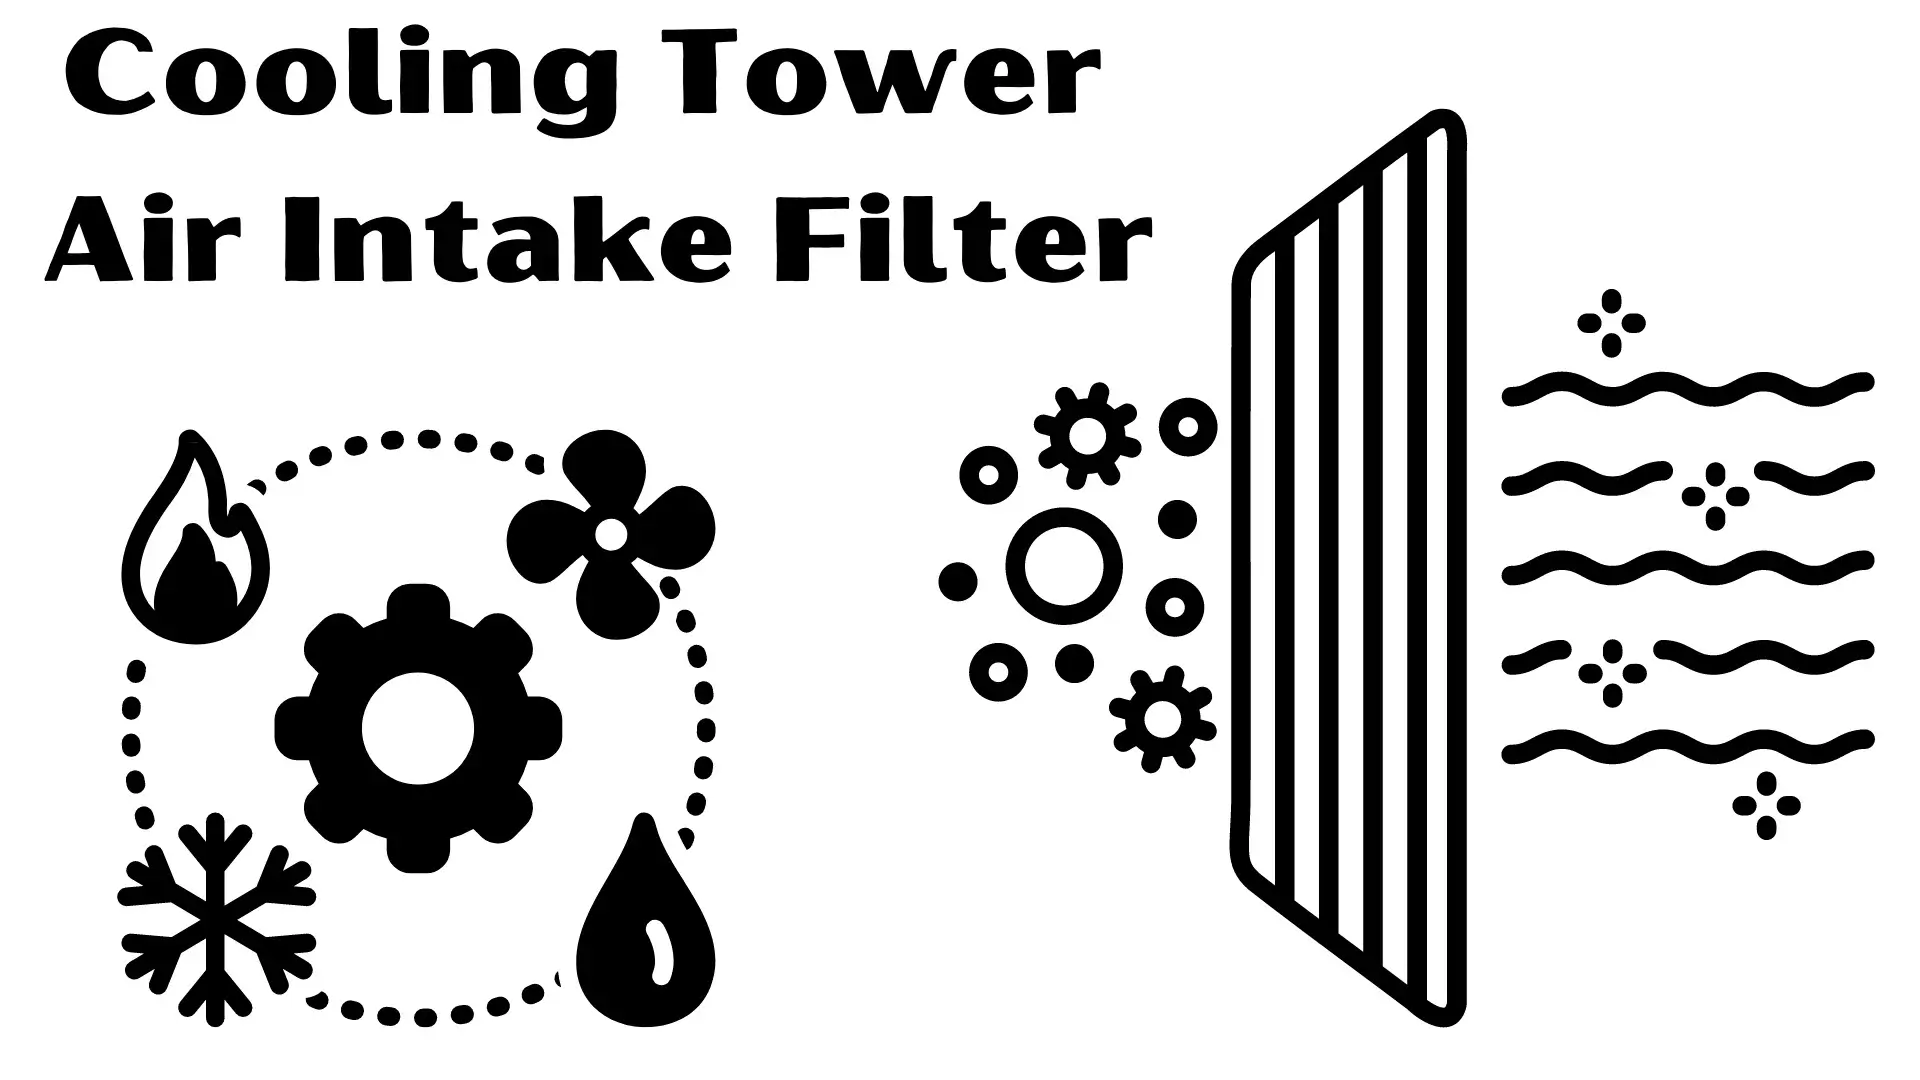 Cooling Tower Air Intake Filter